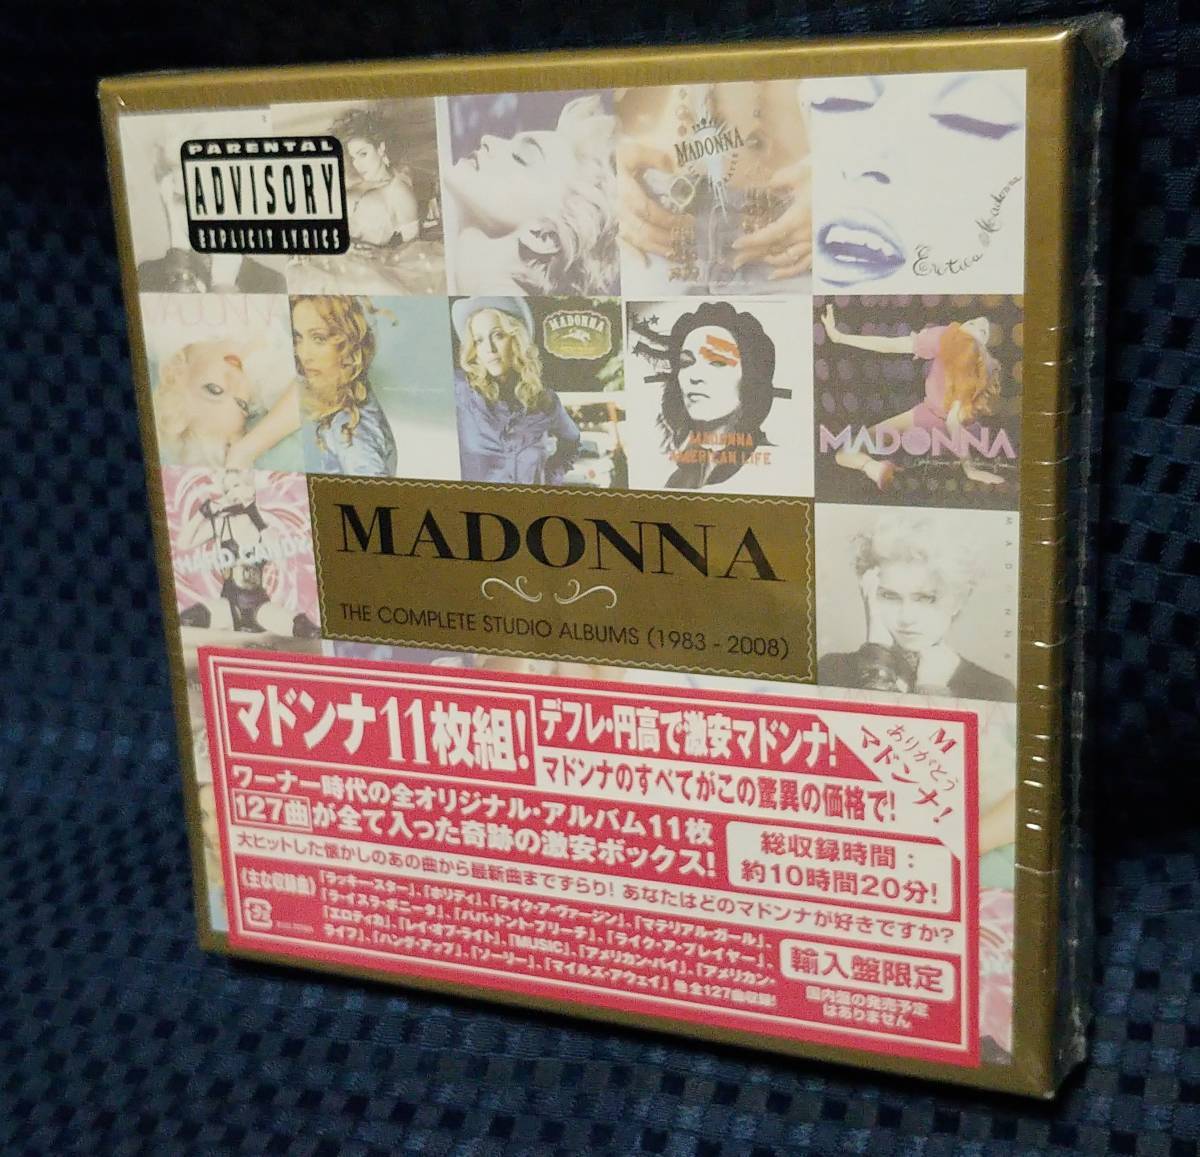 ヤフオク! -「マドンナ cd box」(Madonna) (M)の落札相場・落札価格